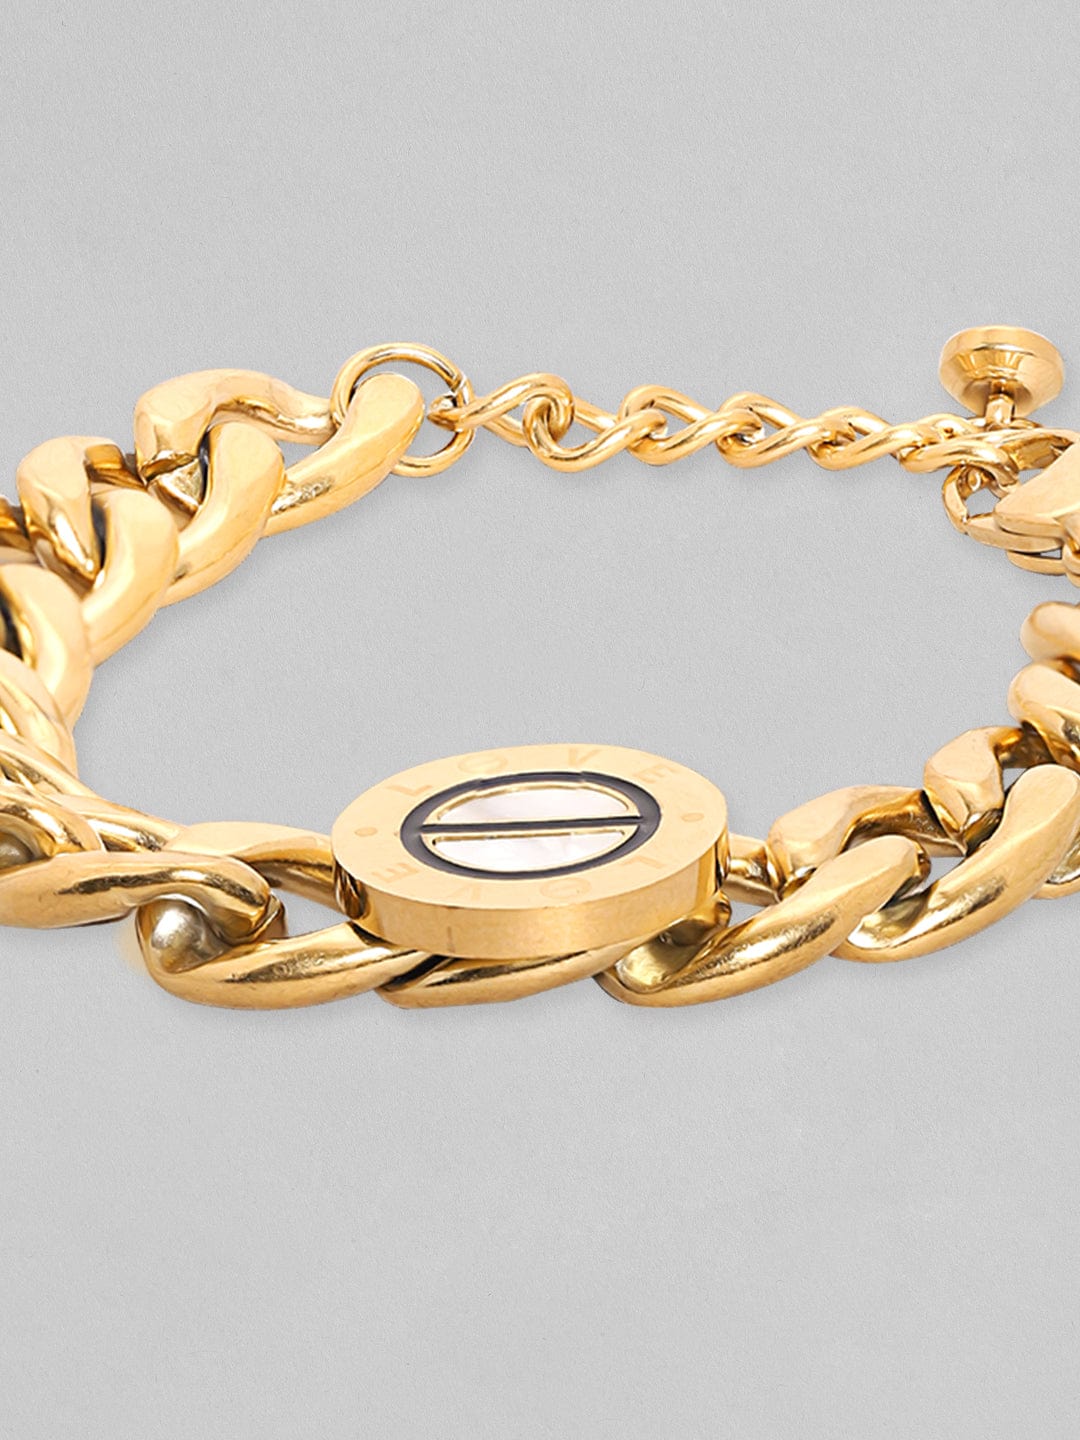 Rubans Voguish Gold Tonedstainless Steel Cuban Link Bracelet Bangles &amp; Bracelets